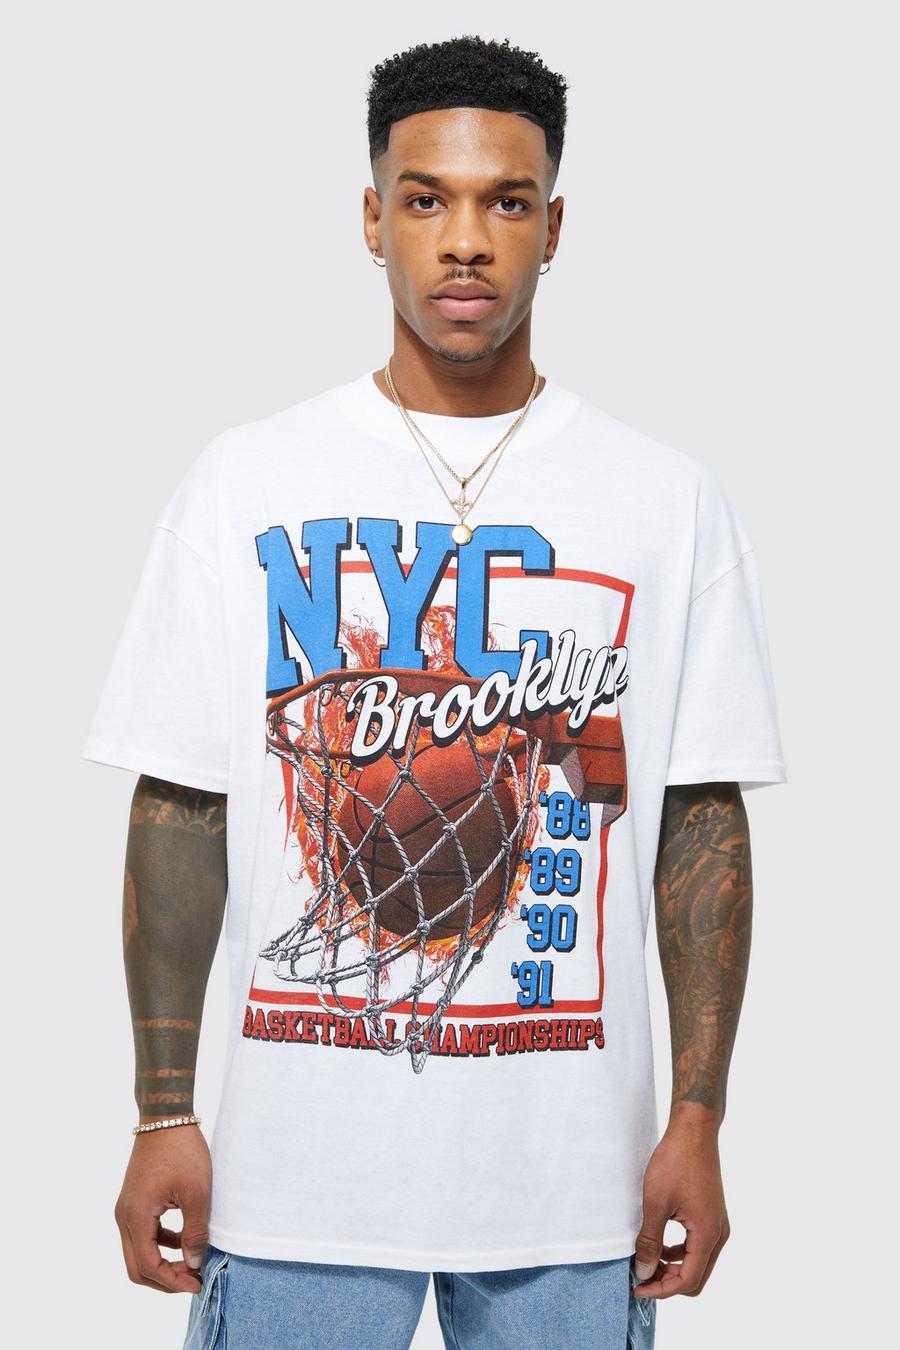 cool basketball team shirts